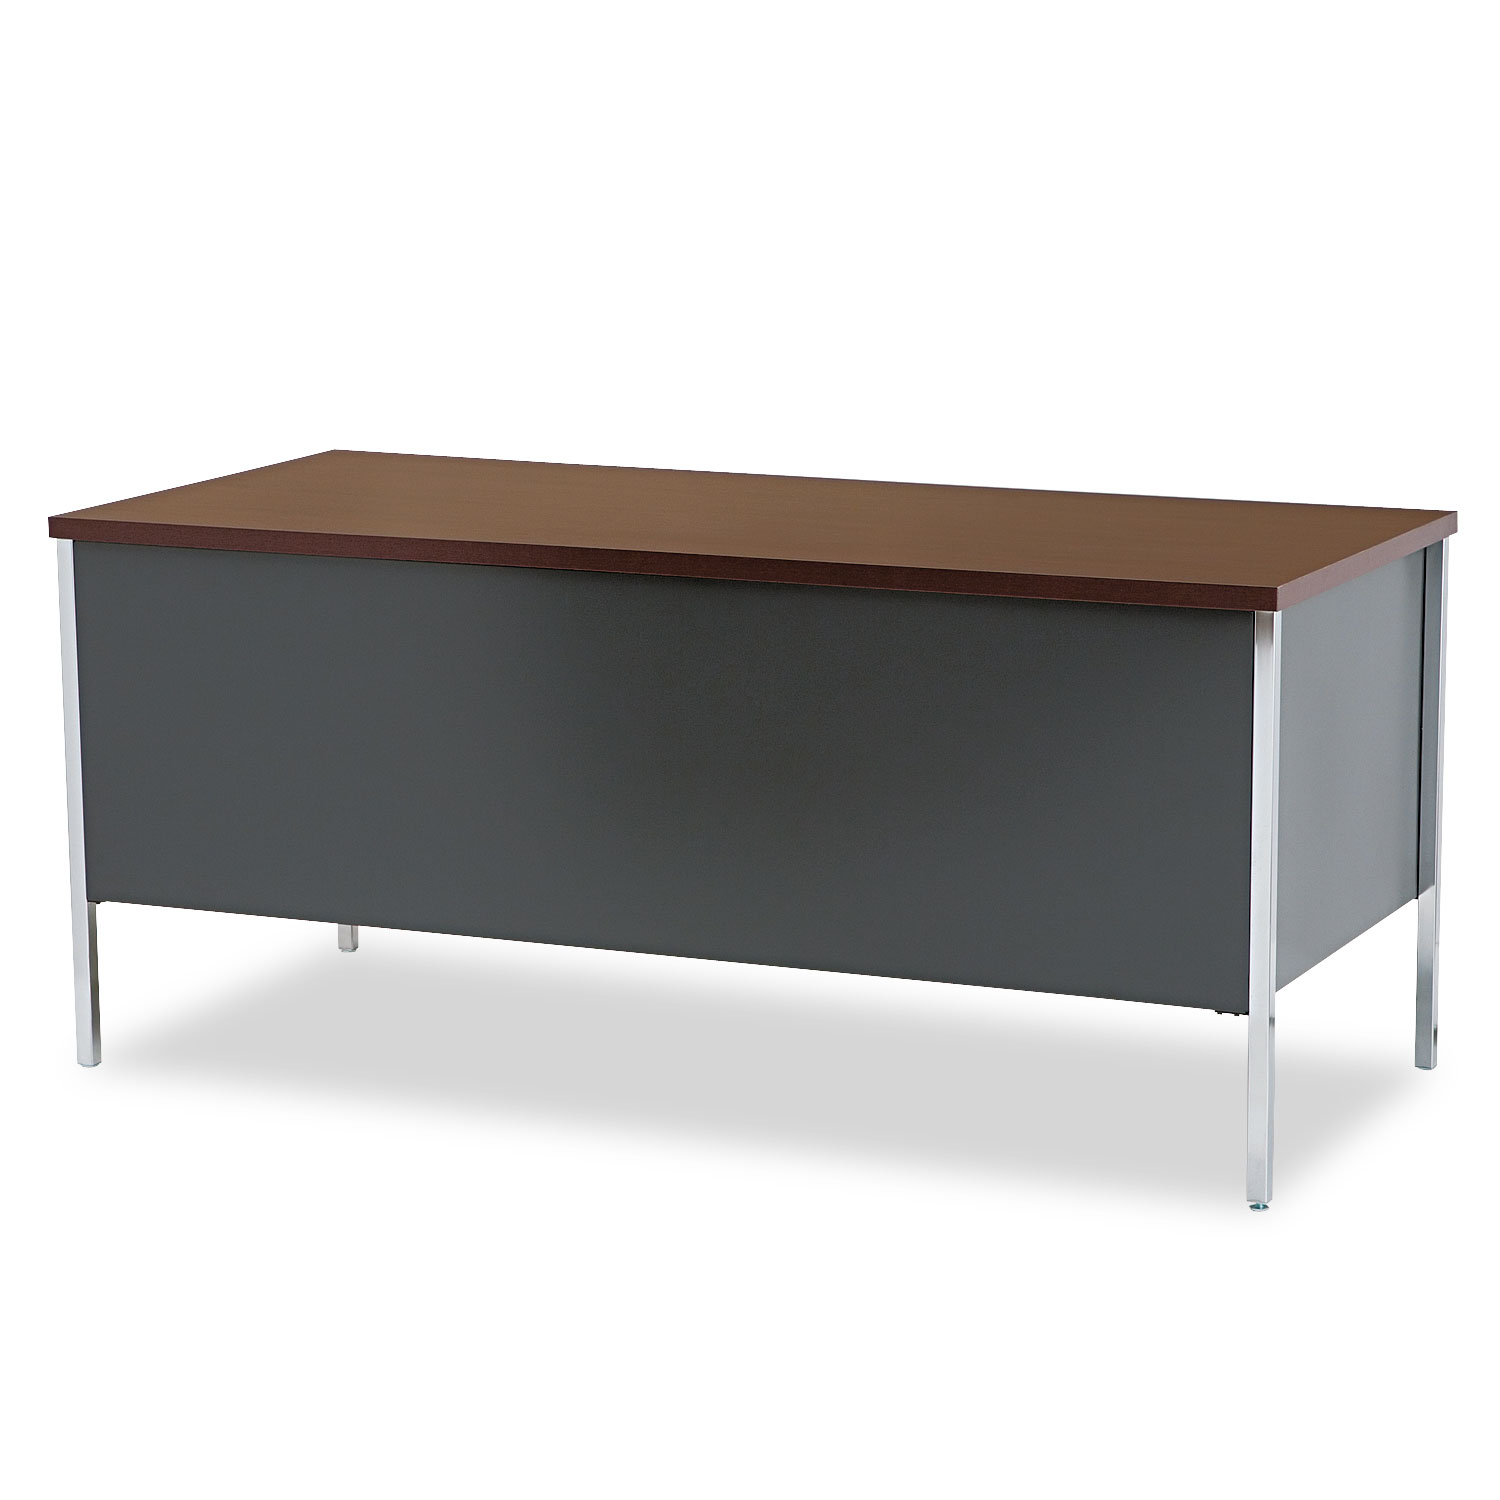 34000 Series Left Pedestal Desk, 66w x 30d x 29 1/2h, Mahogany/Charcoal